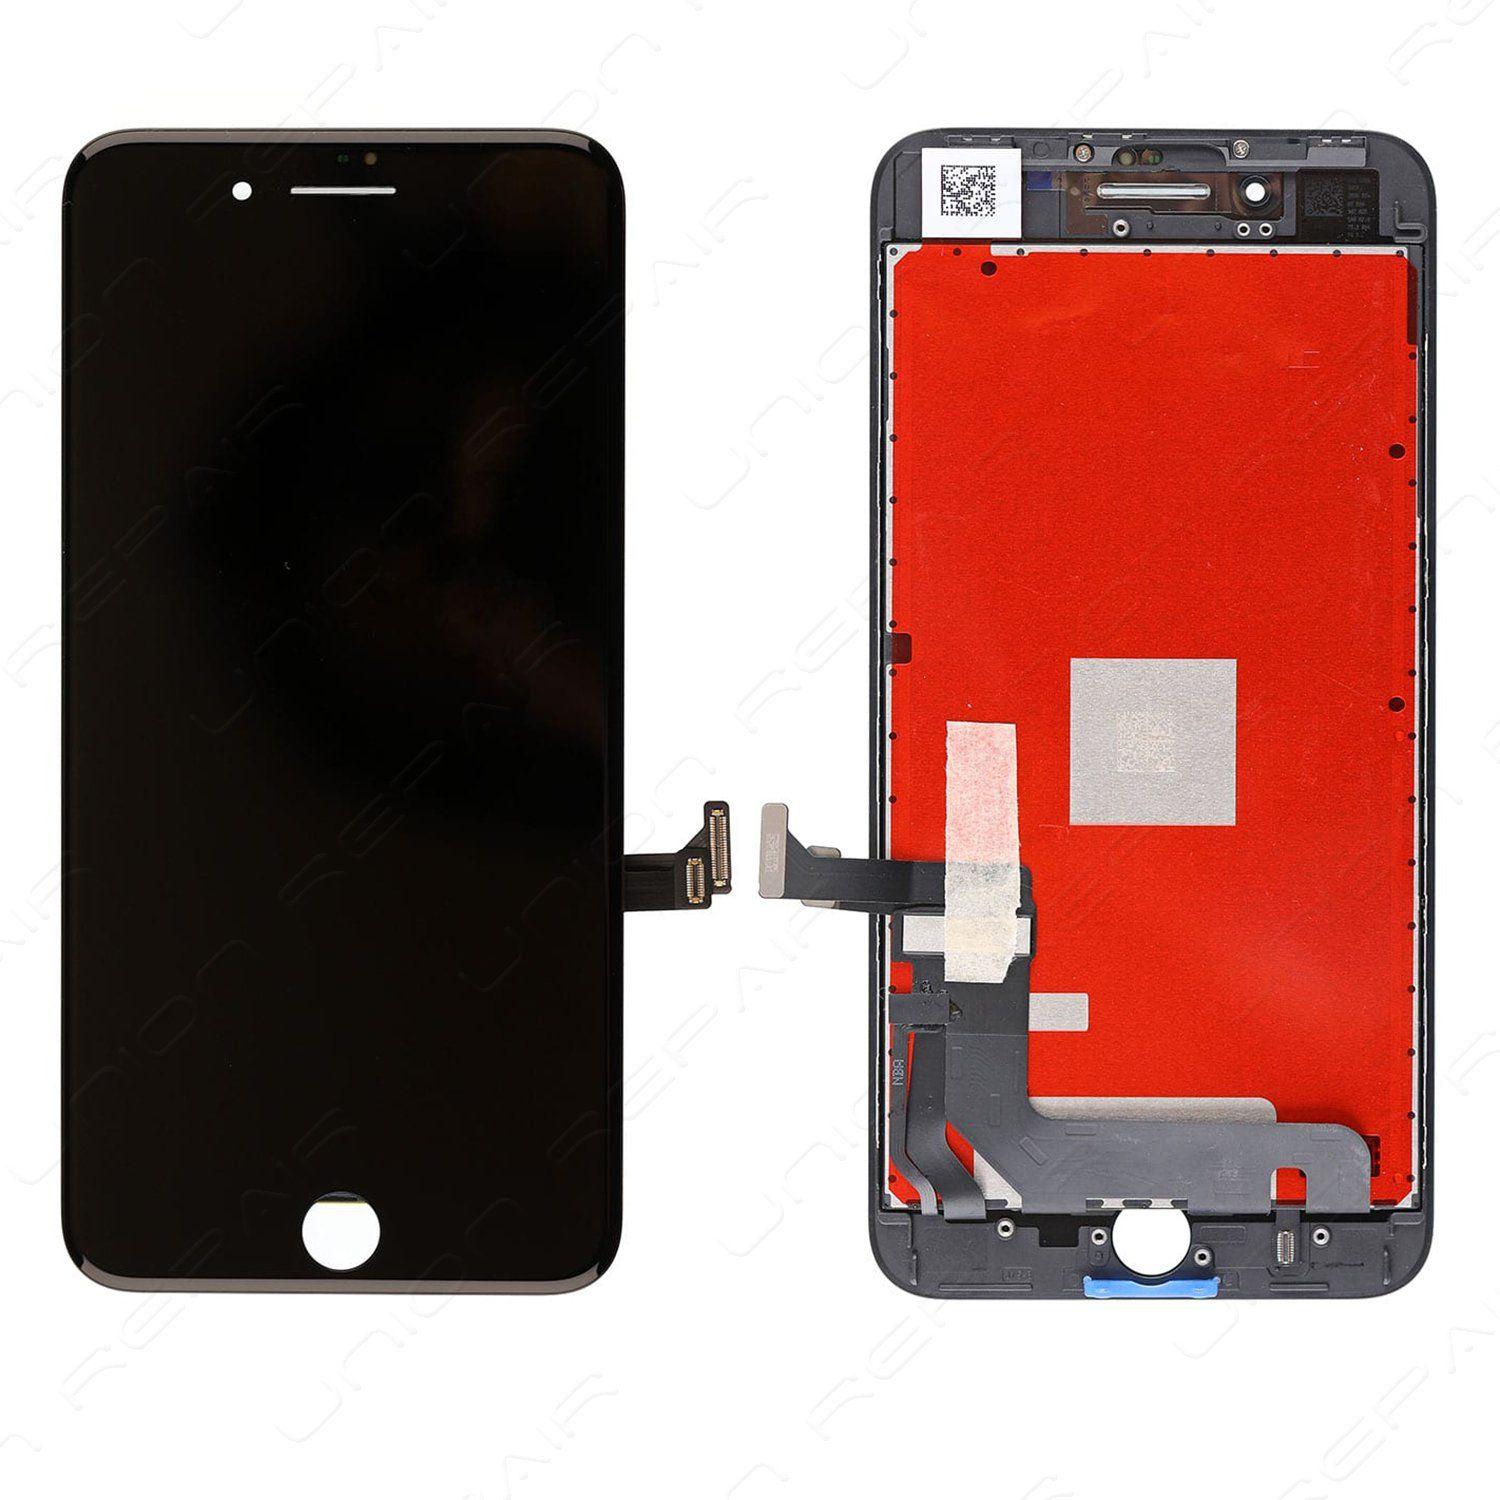 Originál LCD + Dotyková vrstva iPhone 8 Plus černá repasovaný díl - vyměněné sklíčko